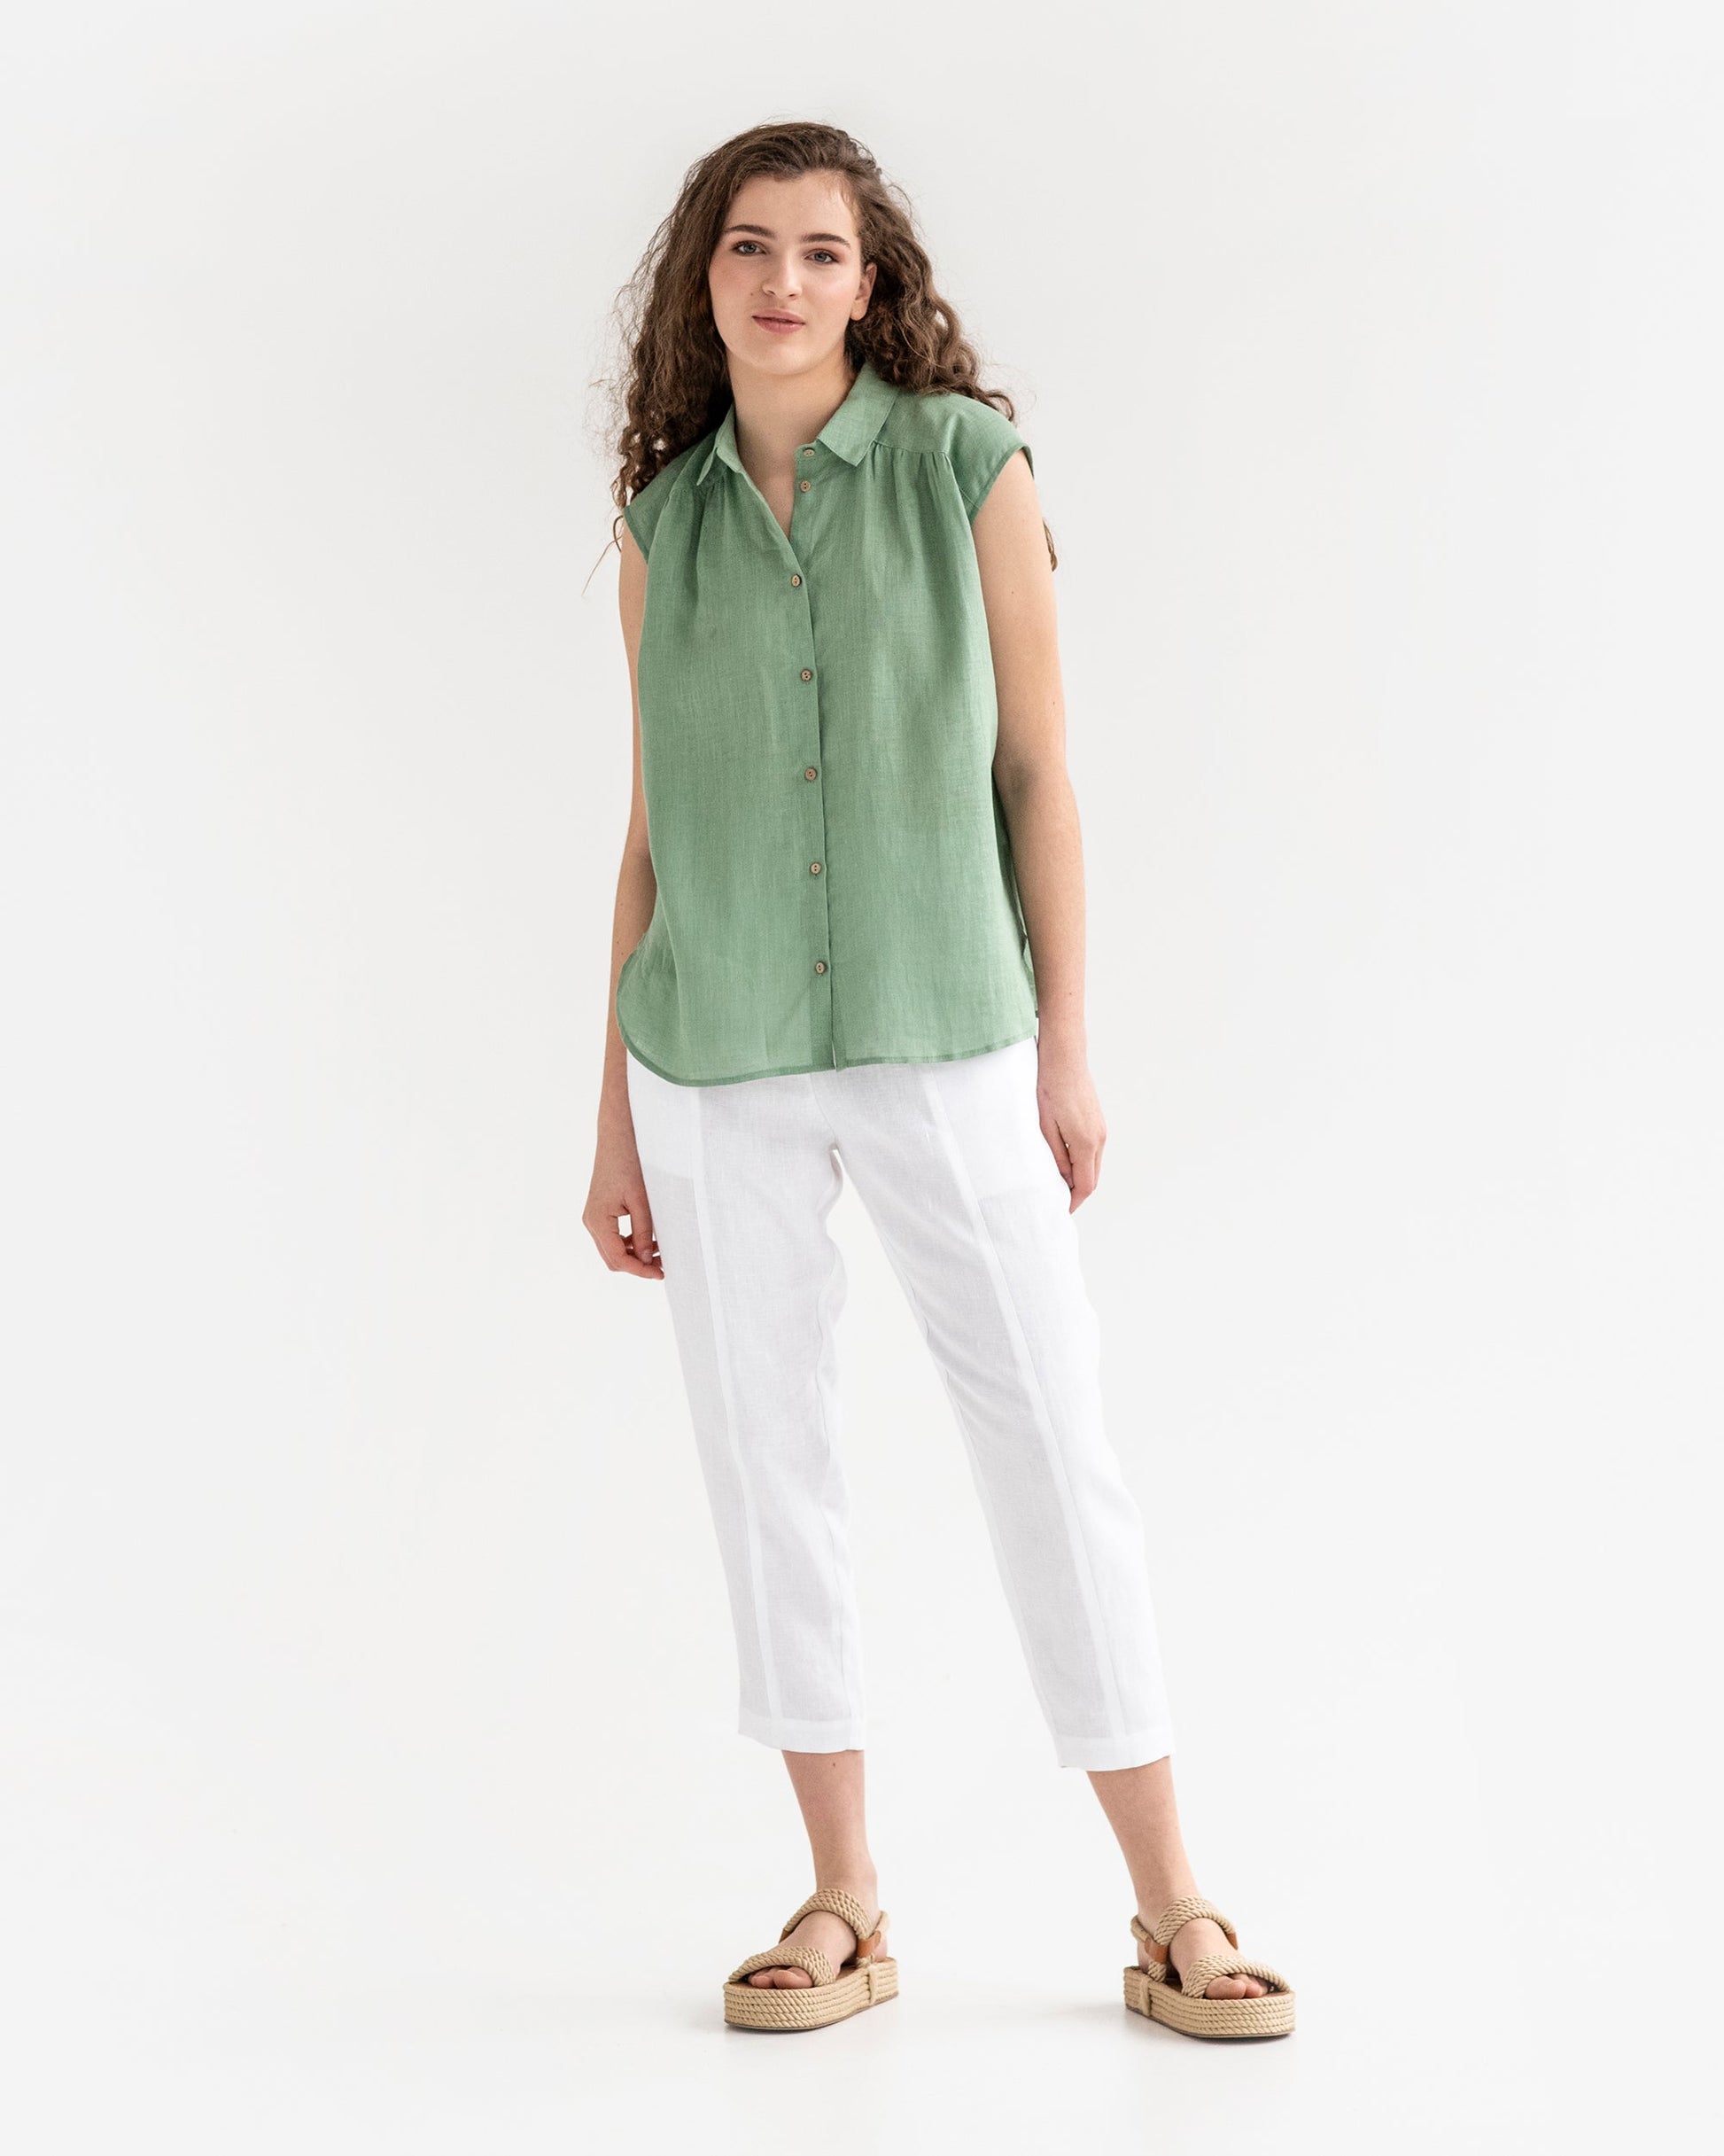 Lightweight linen shirt SEDONA in matcha green - MagicLinen